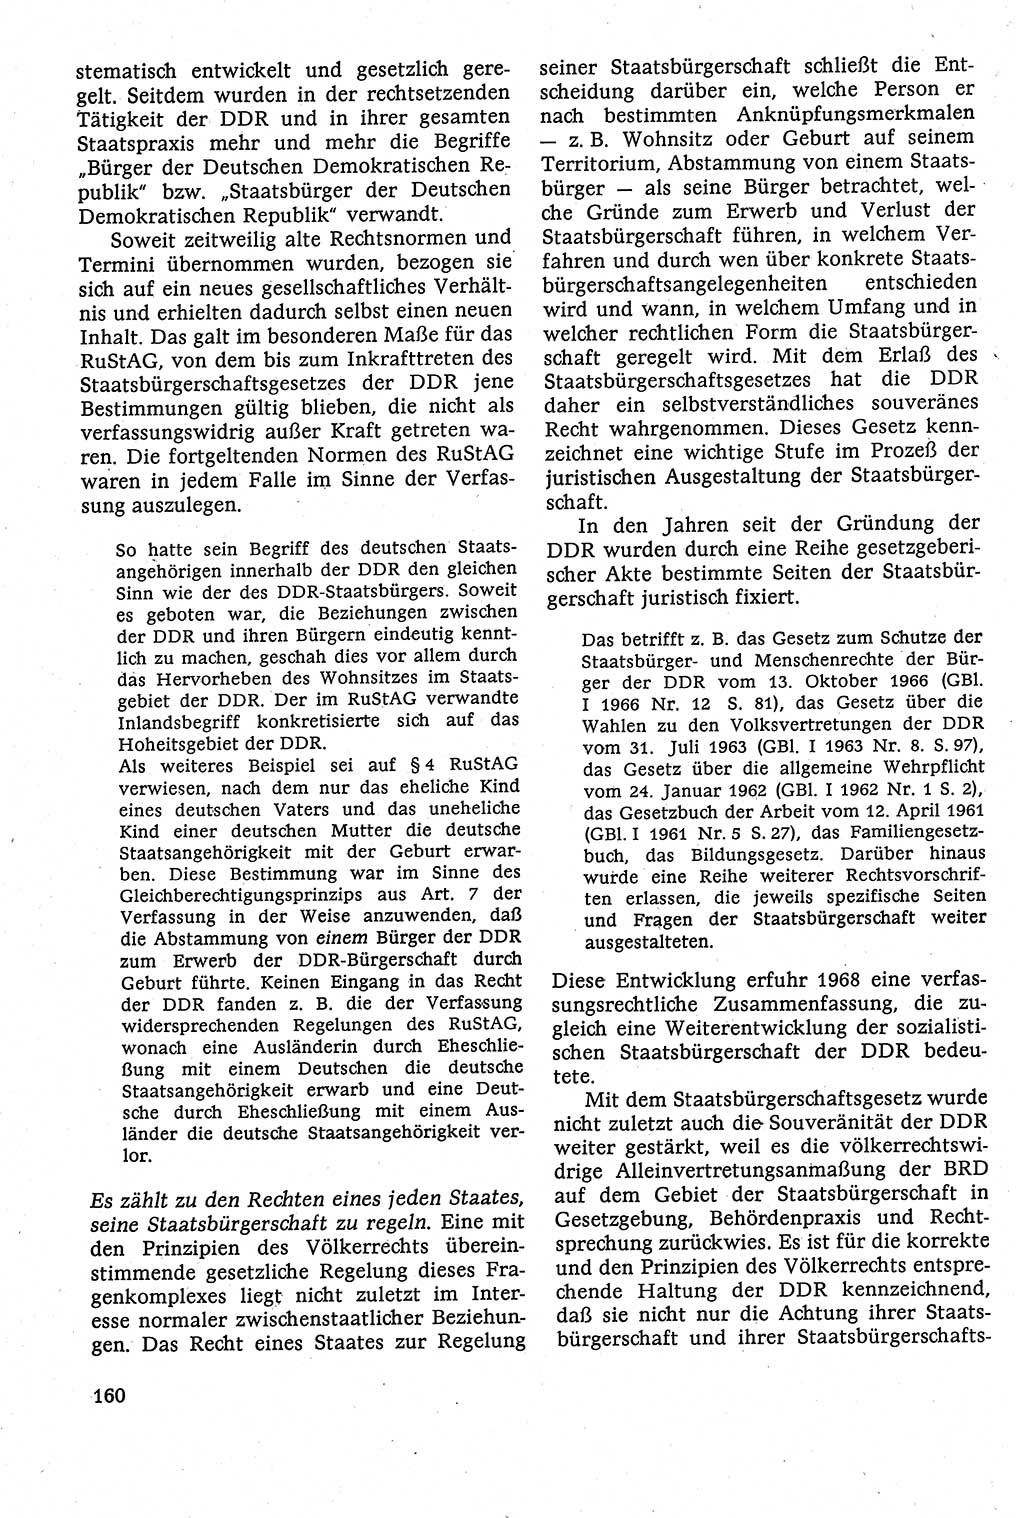 Staatsrecht der DDR [Deutsche Demokratische Republik (DDR)], Lehrbuch 1984, Seite 160 (St.-R. DDR Lb. 1984, S. 160)